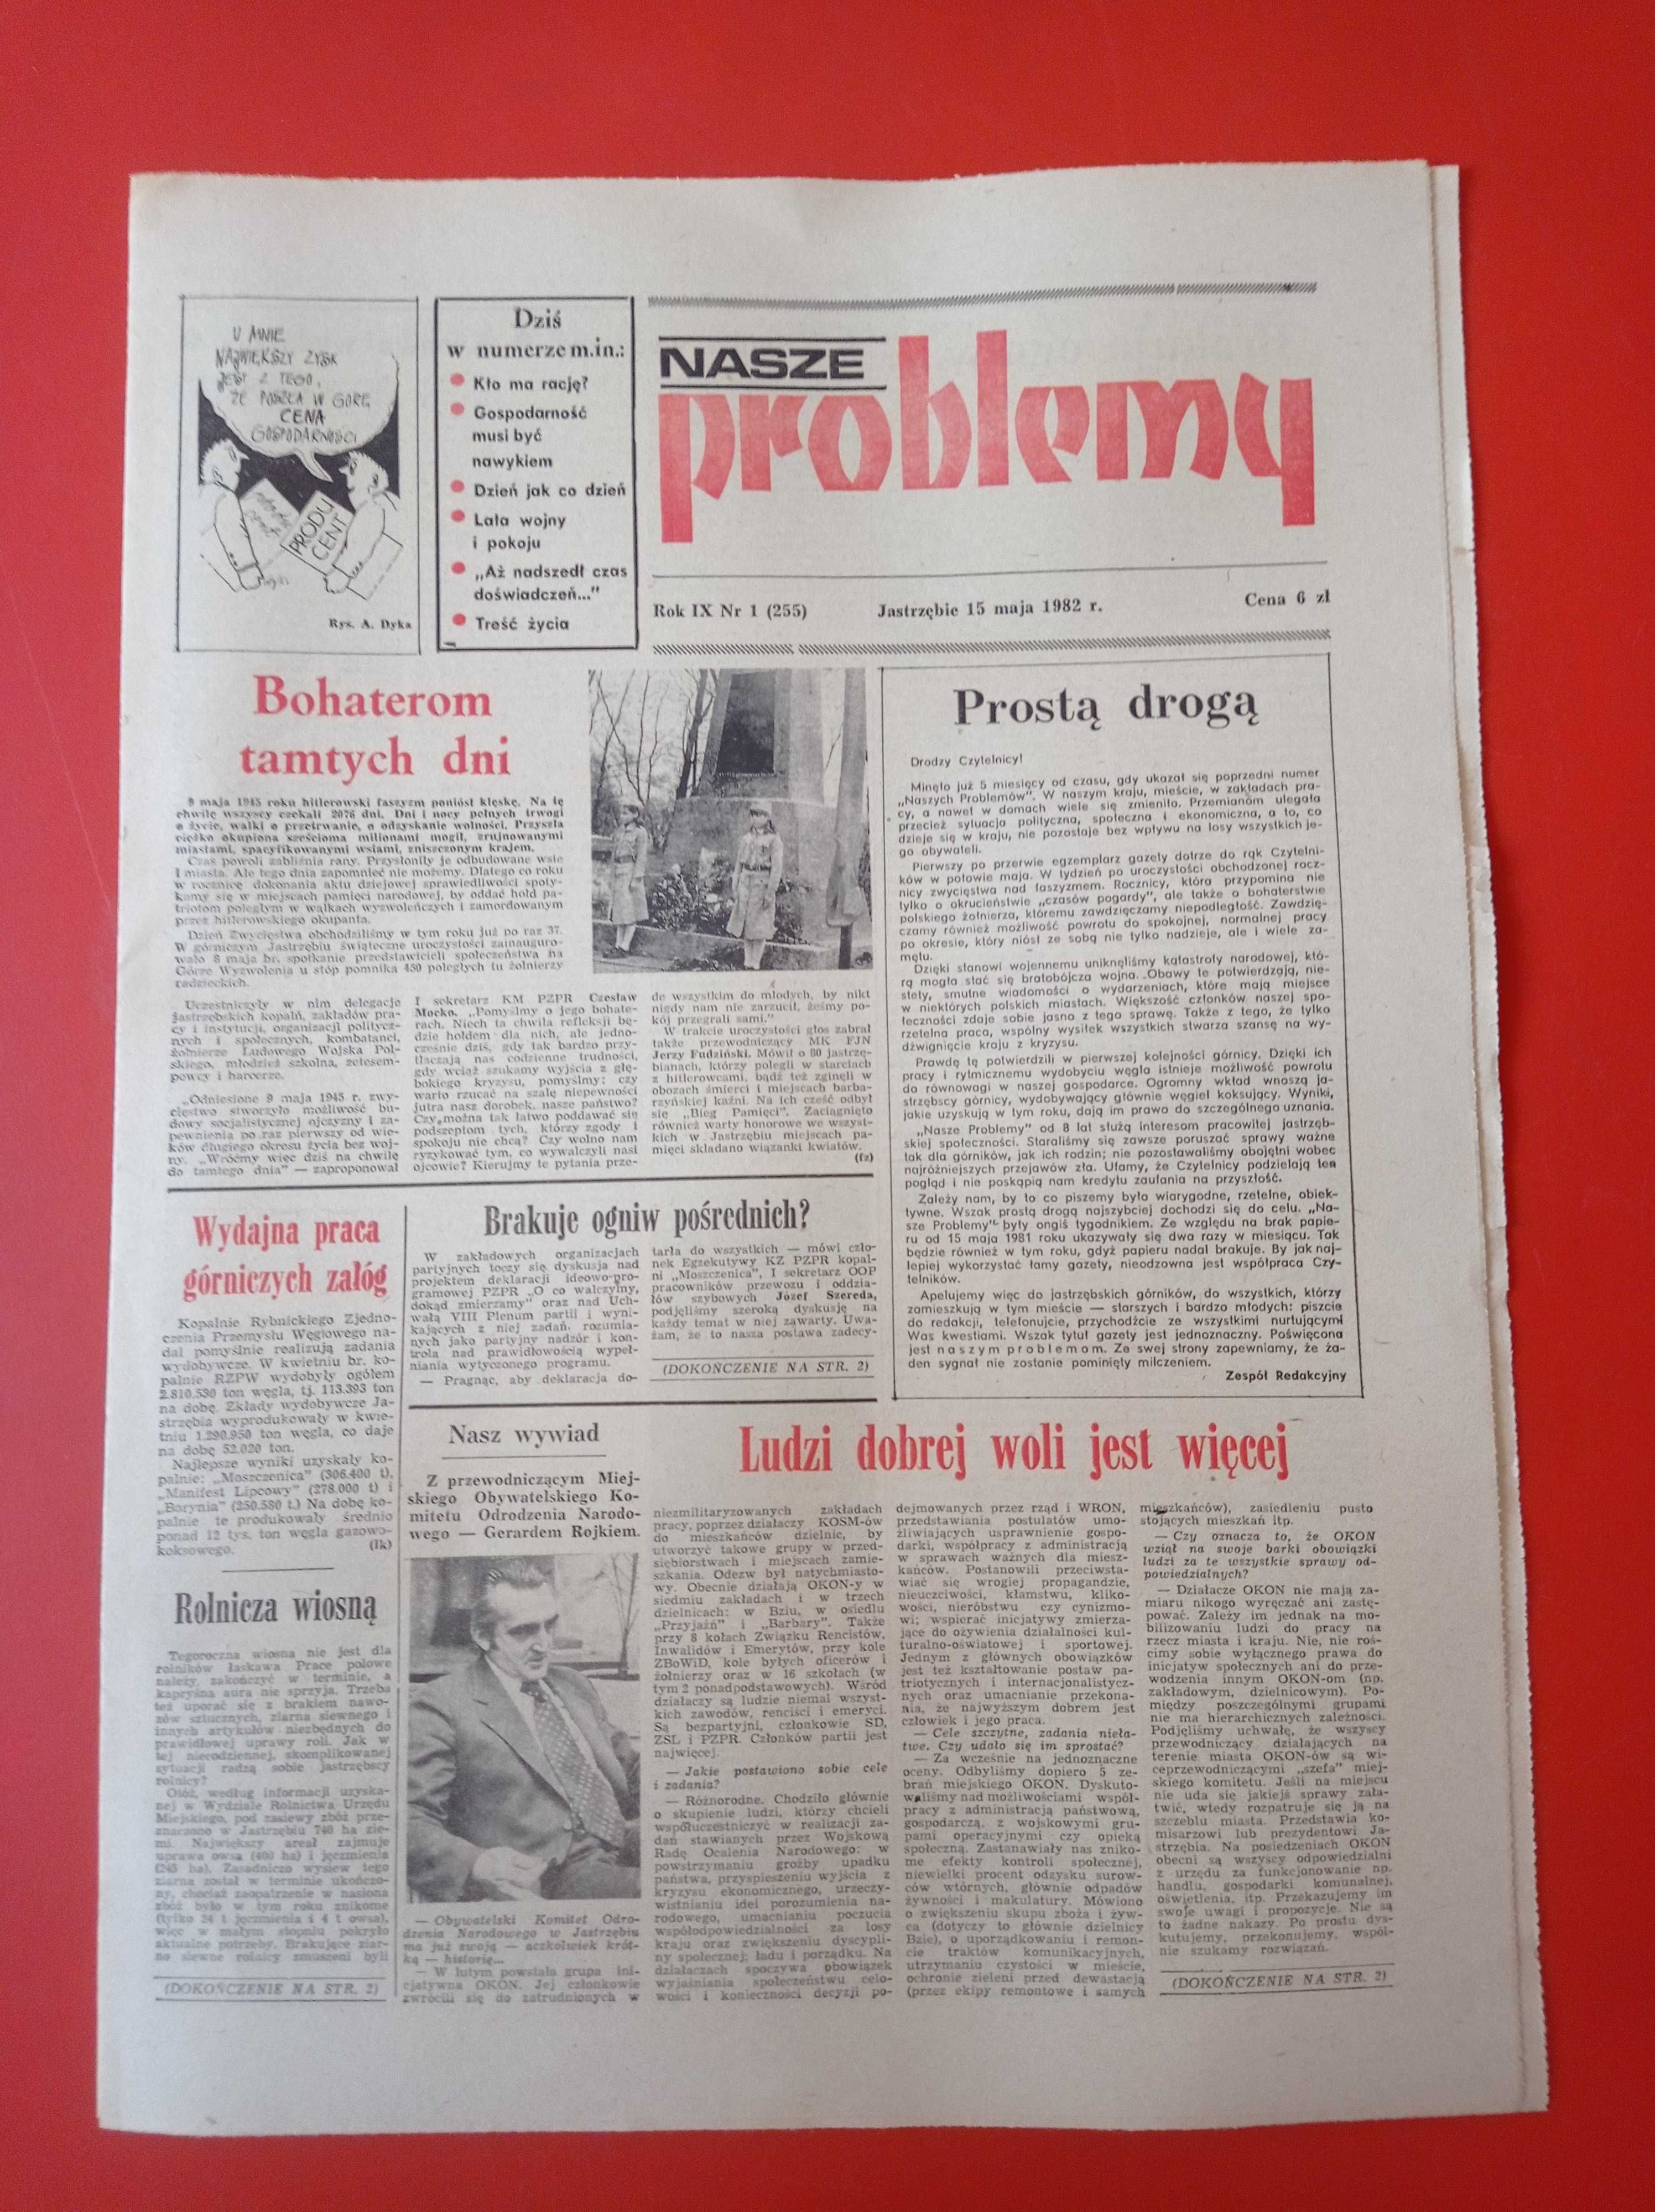 Nasze problemy, Jastrzębie, nr 1, 15 maja 1982